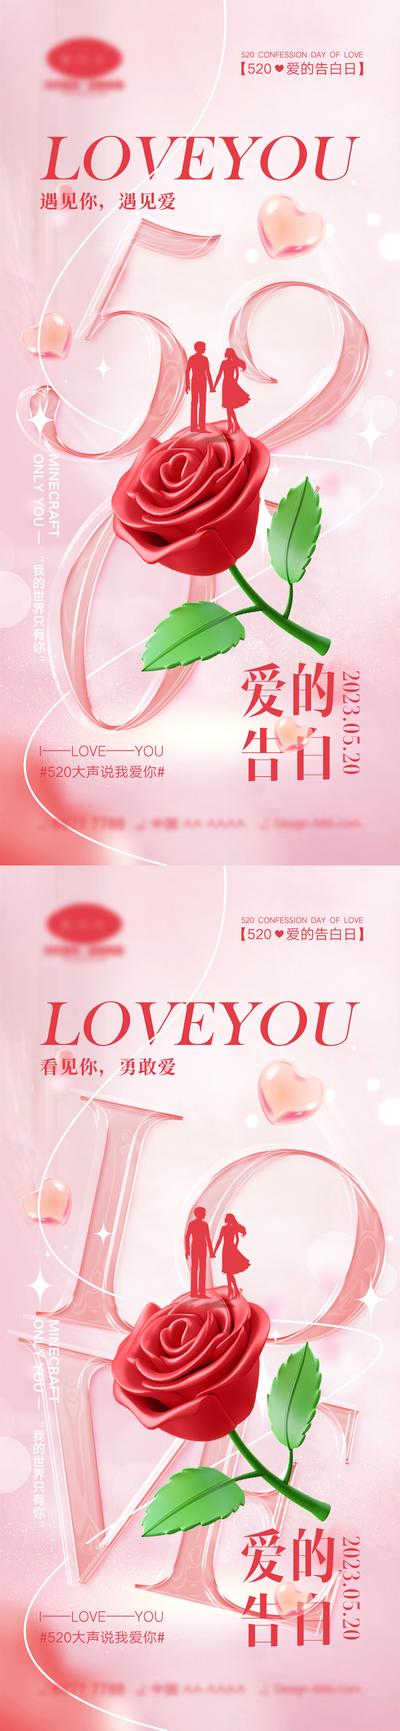 南门网 海报 活动 520 情人节 告白日 love 爱情 喜鹊 牛郎织女 七夕 爱心 气球 214 花朵 爱的告白